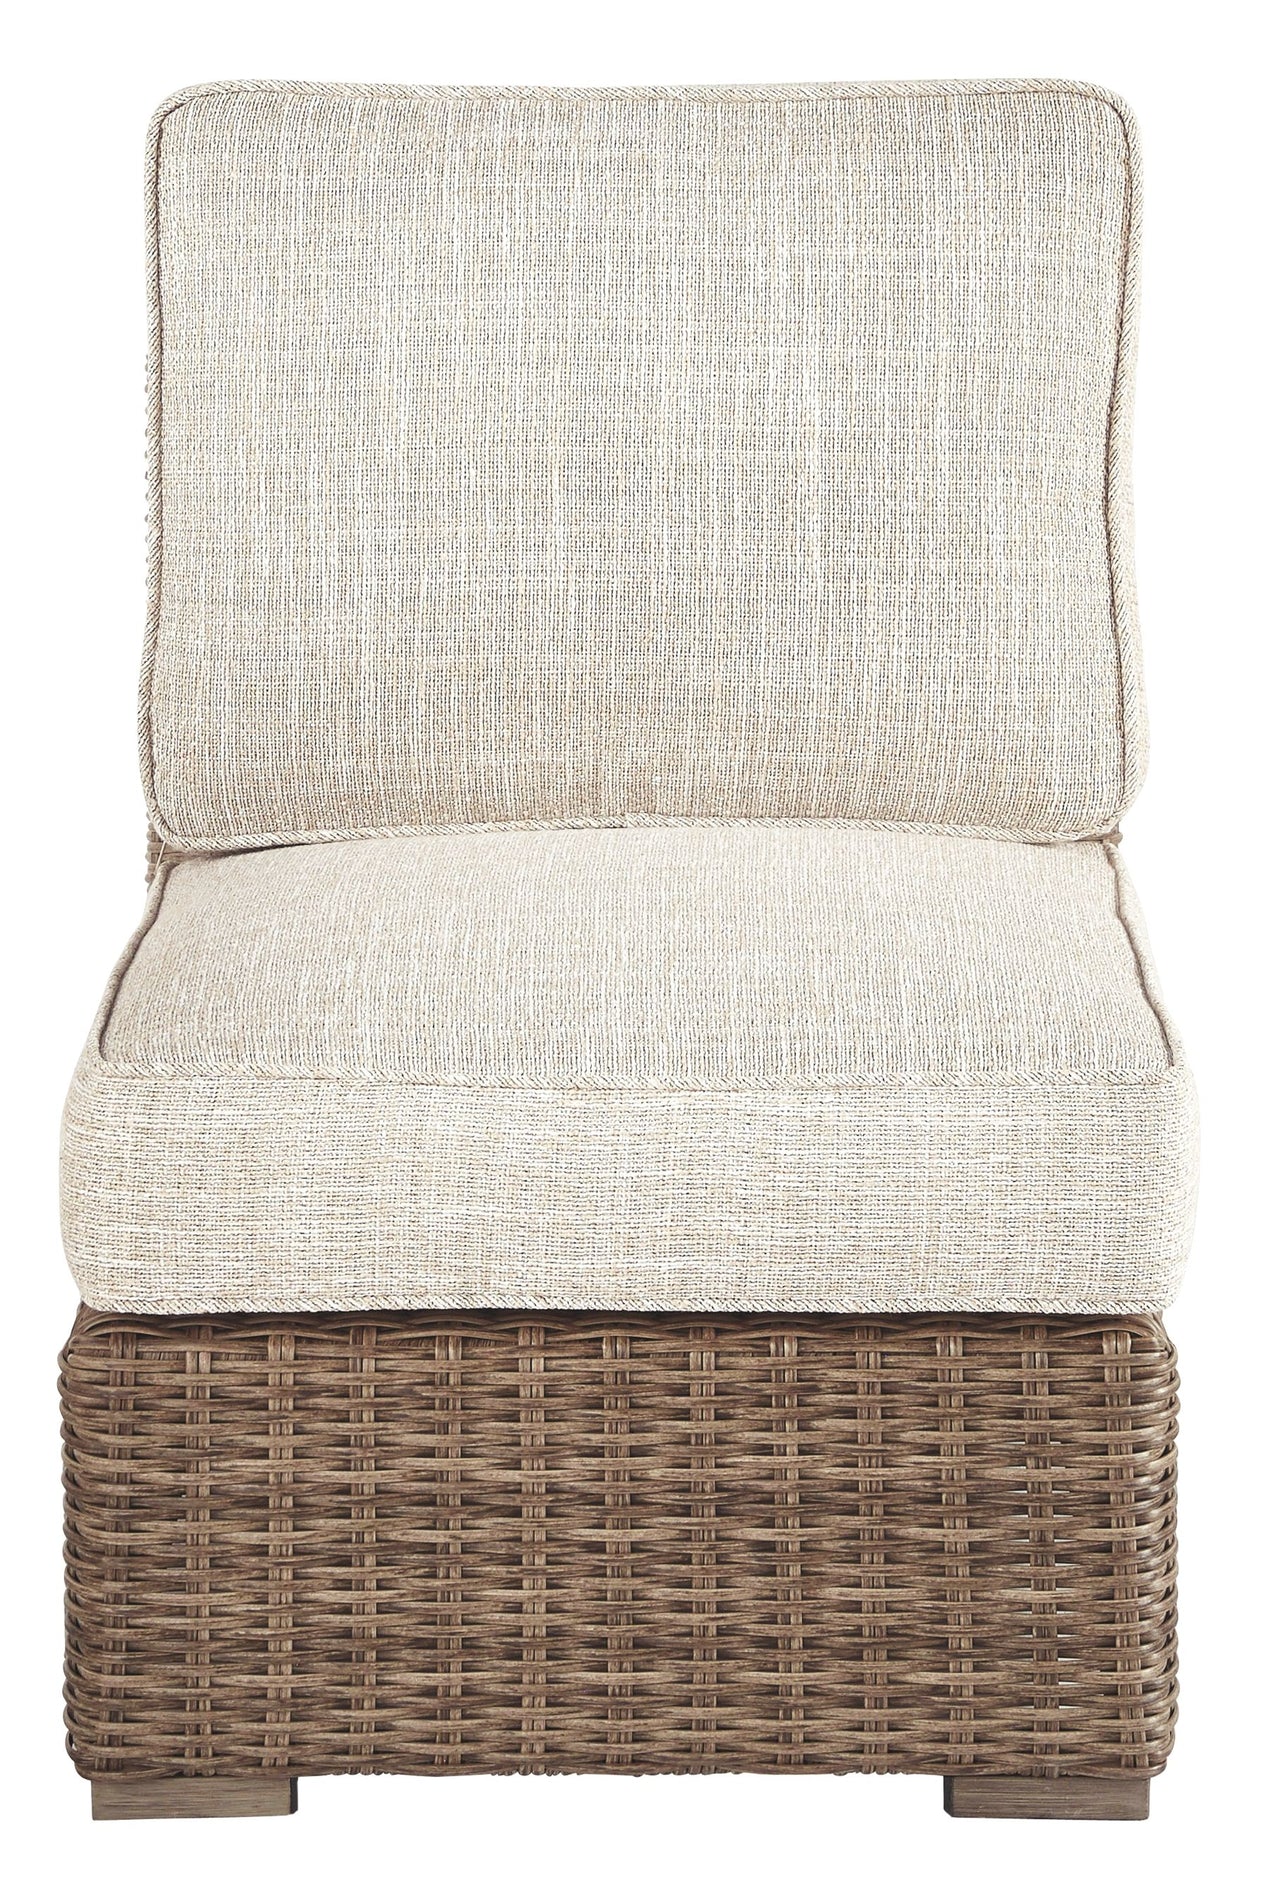 Beachcroft - Beige - Armless Chair W/Cushion Ashley Furniture 